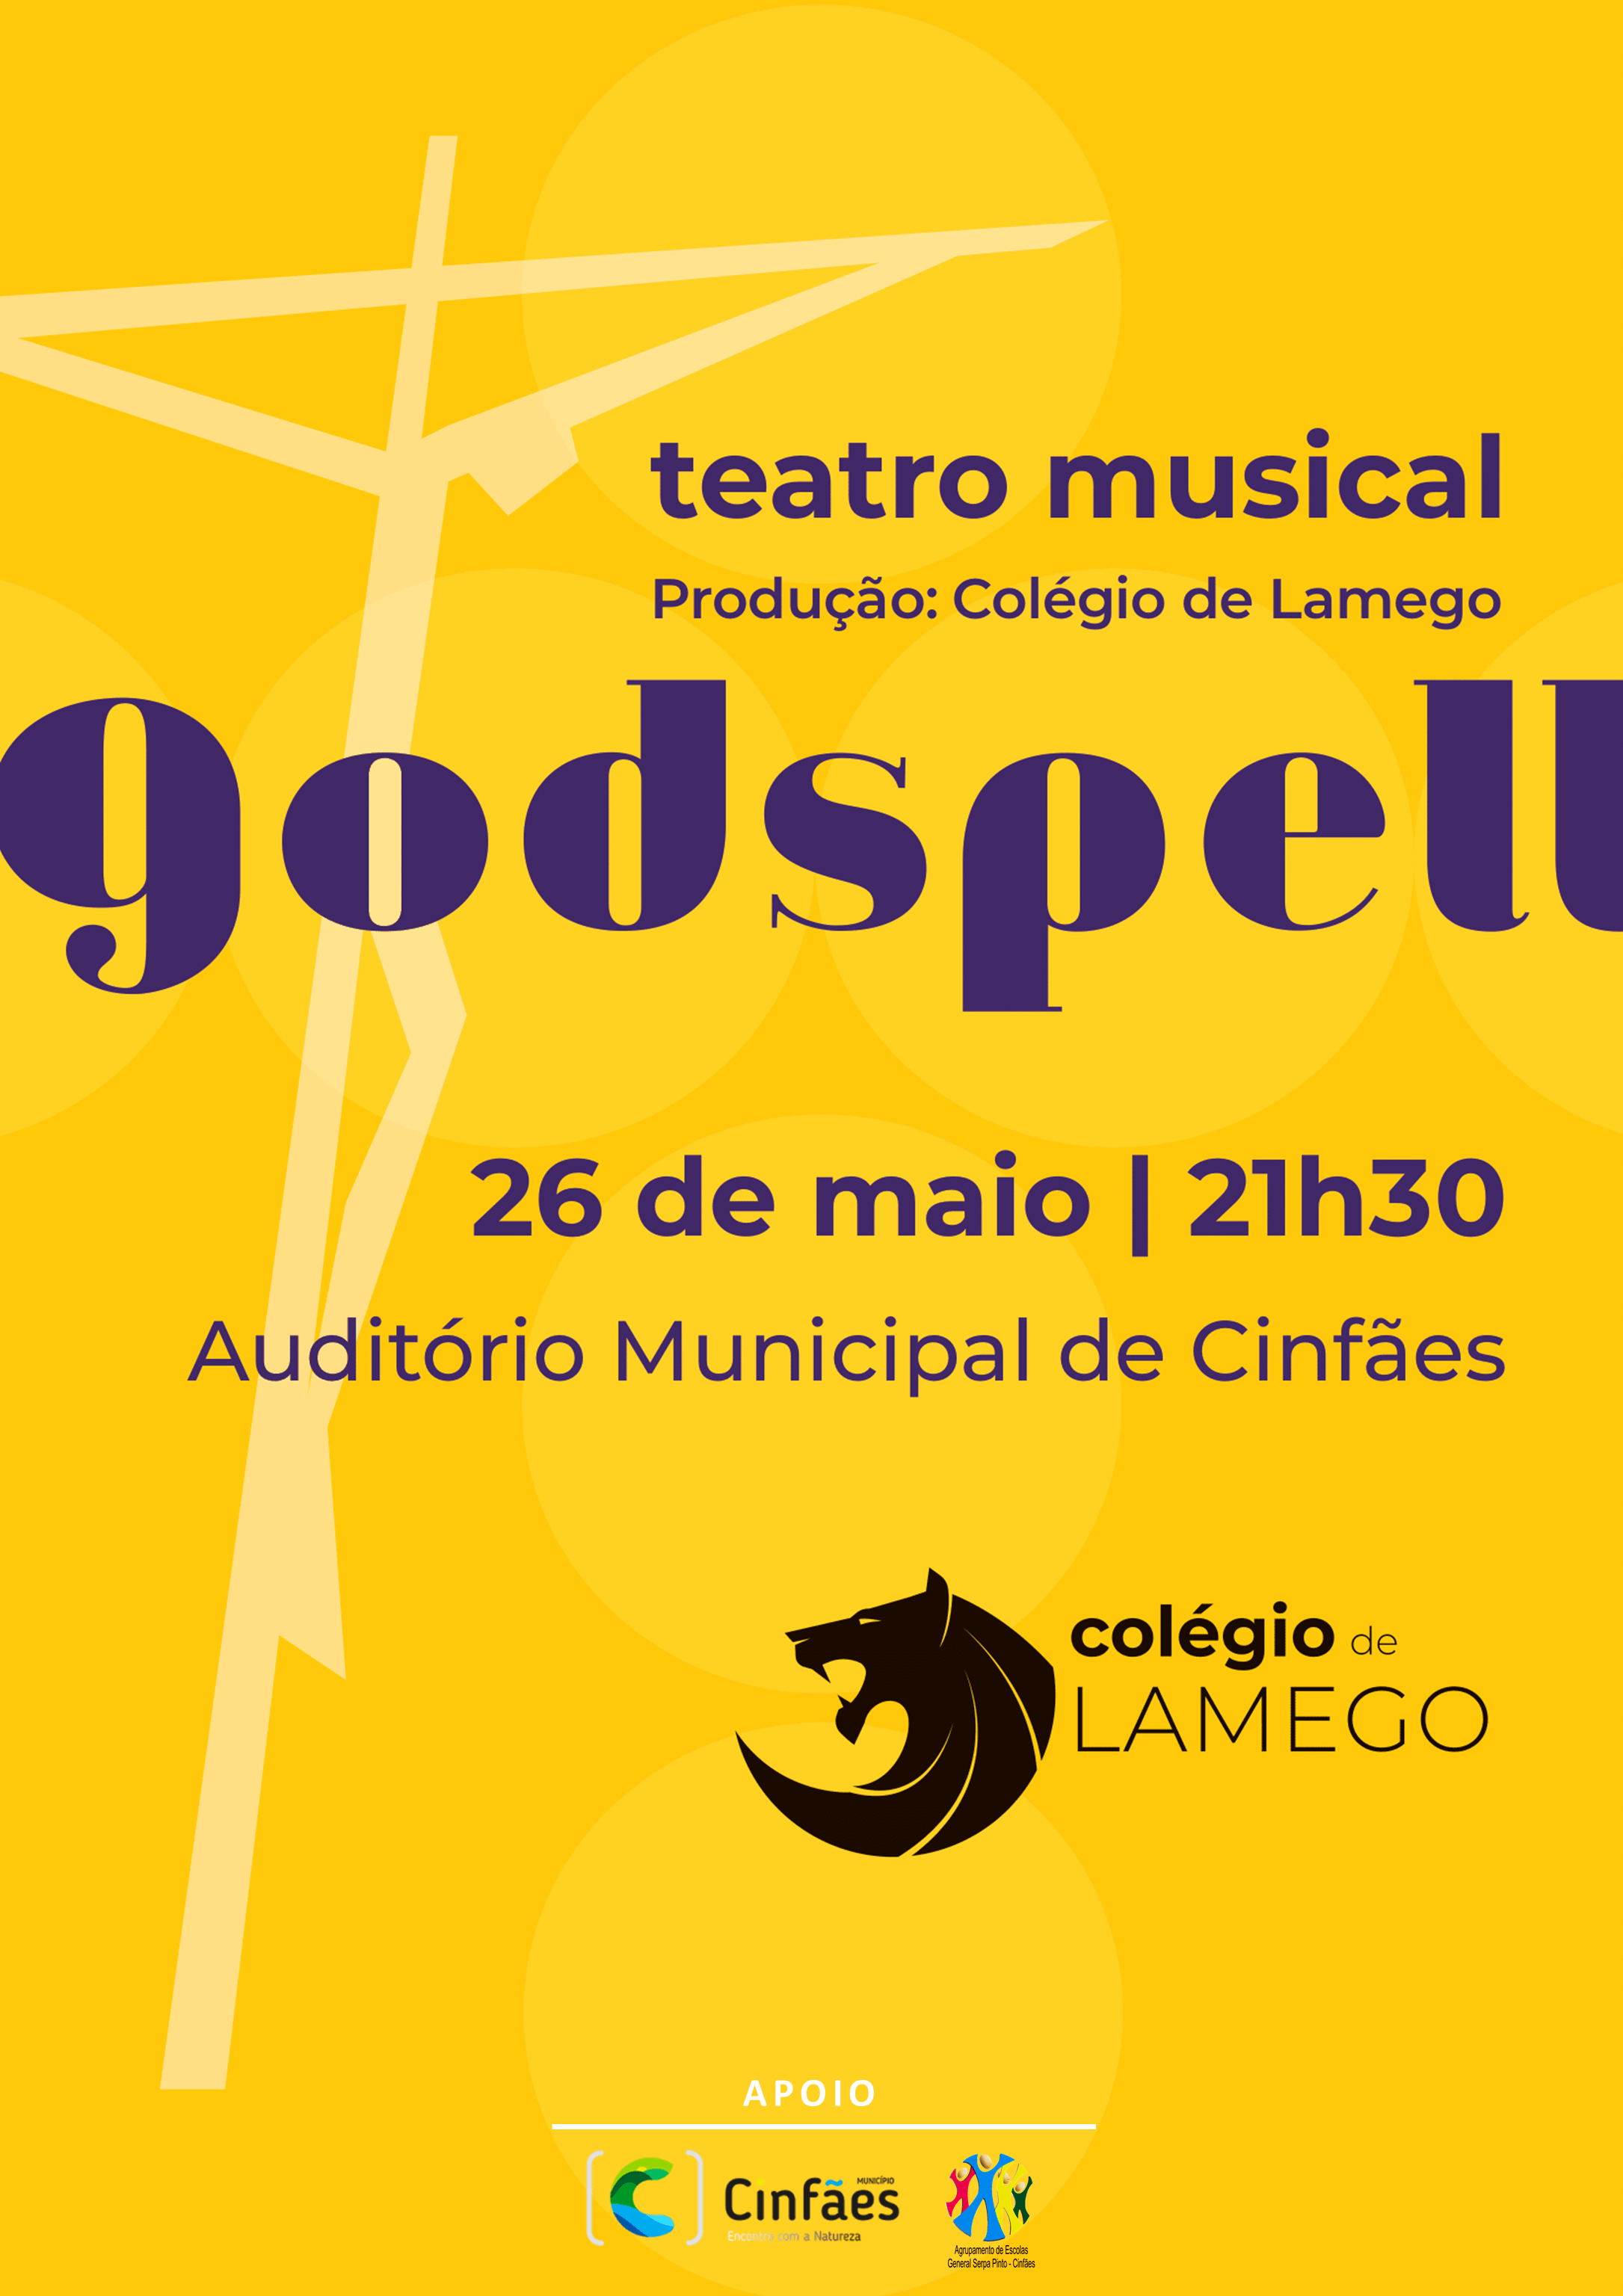 Colégio de Lamego apresenta musical “Godspell”